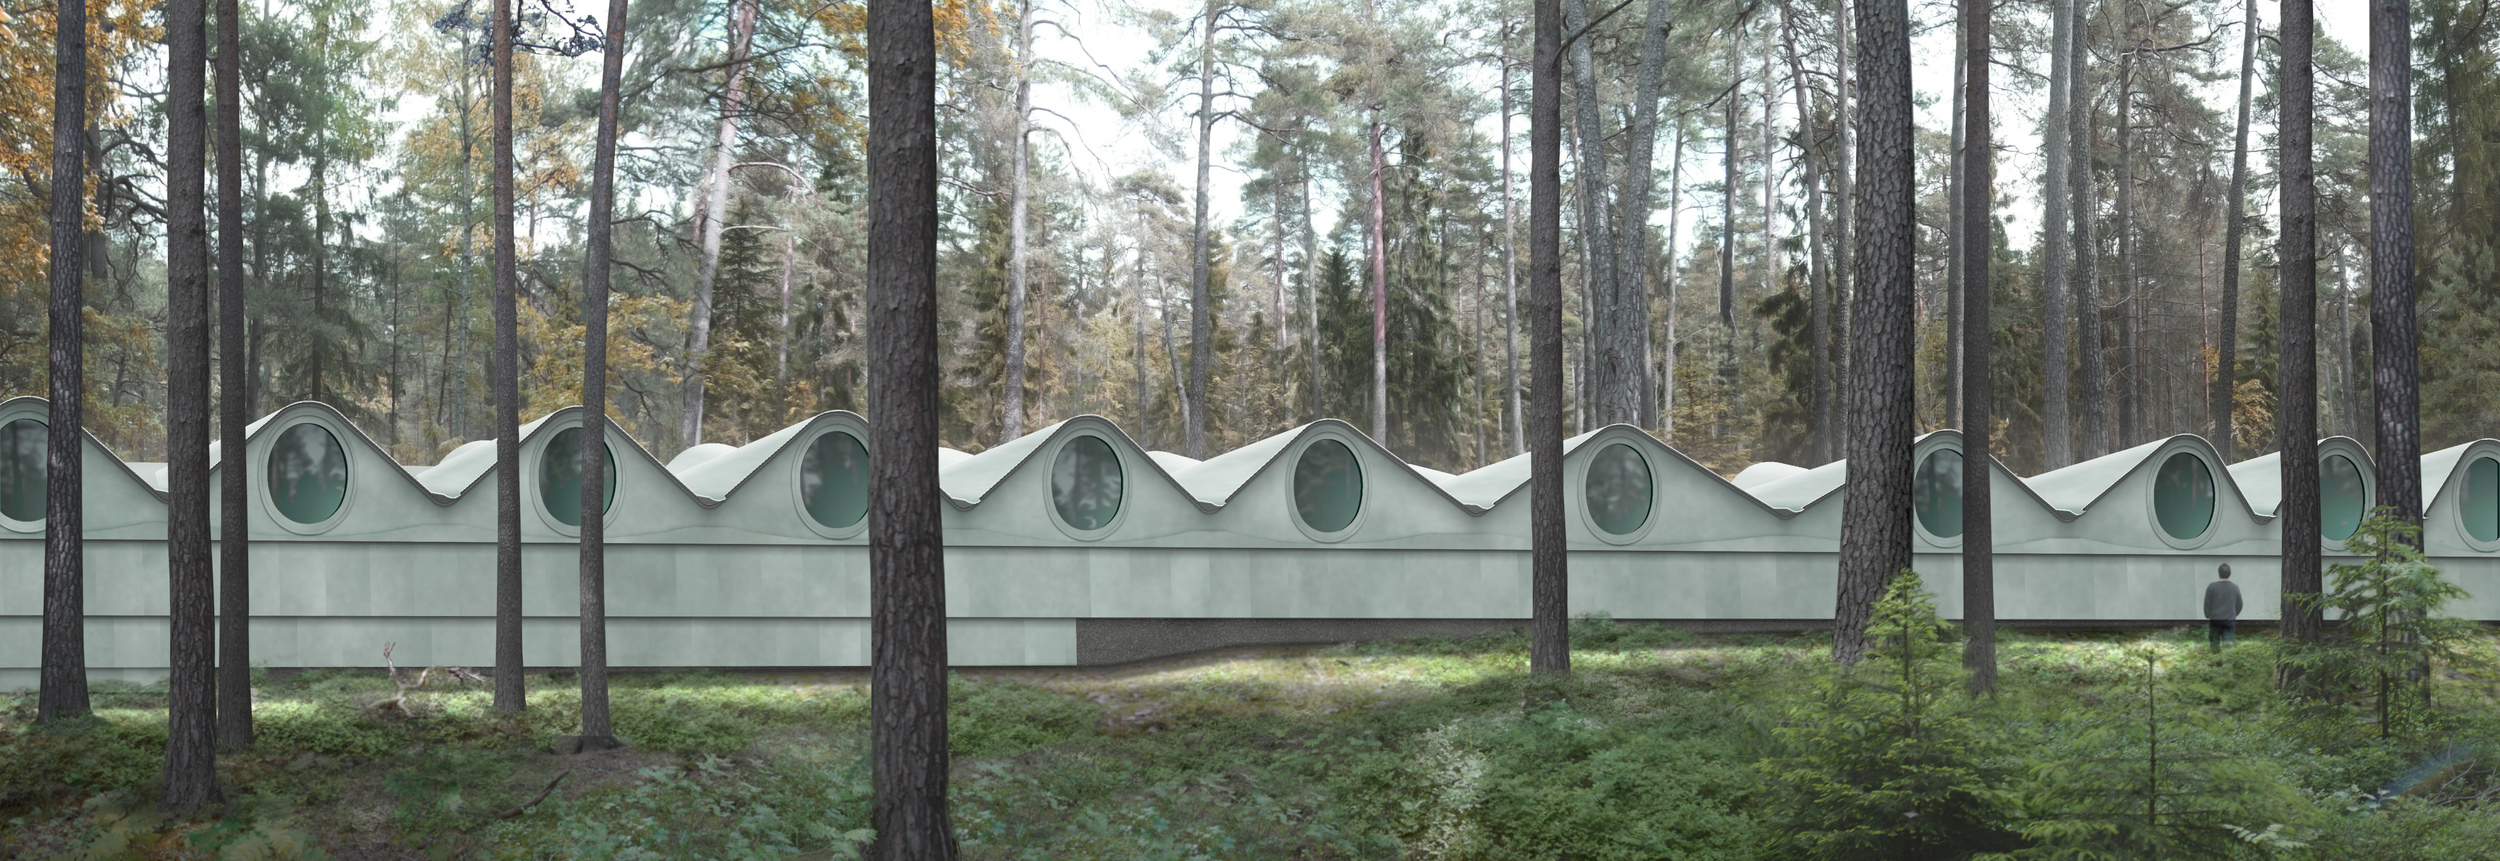 Woodland Crematorium, Stockholm